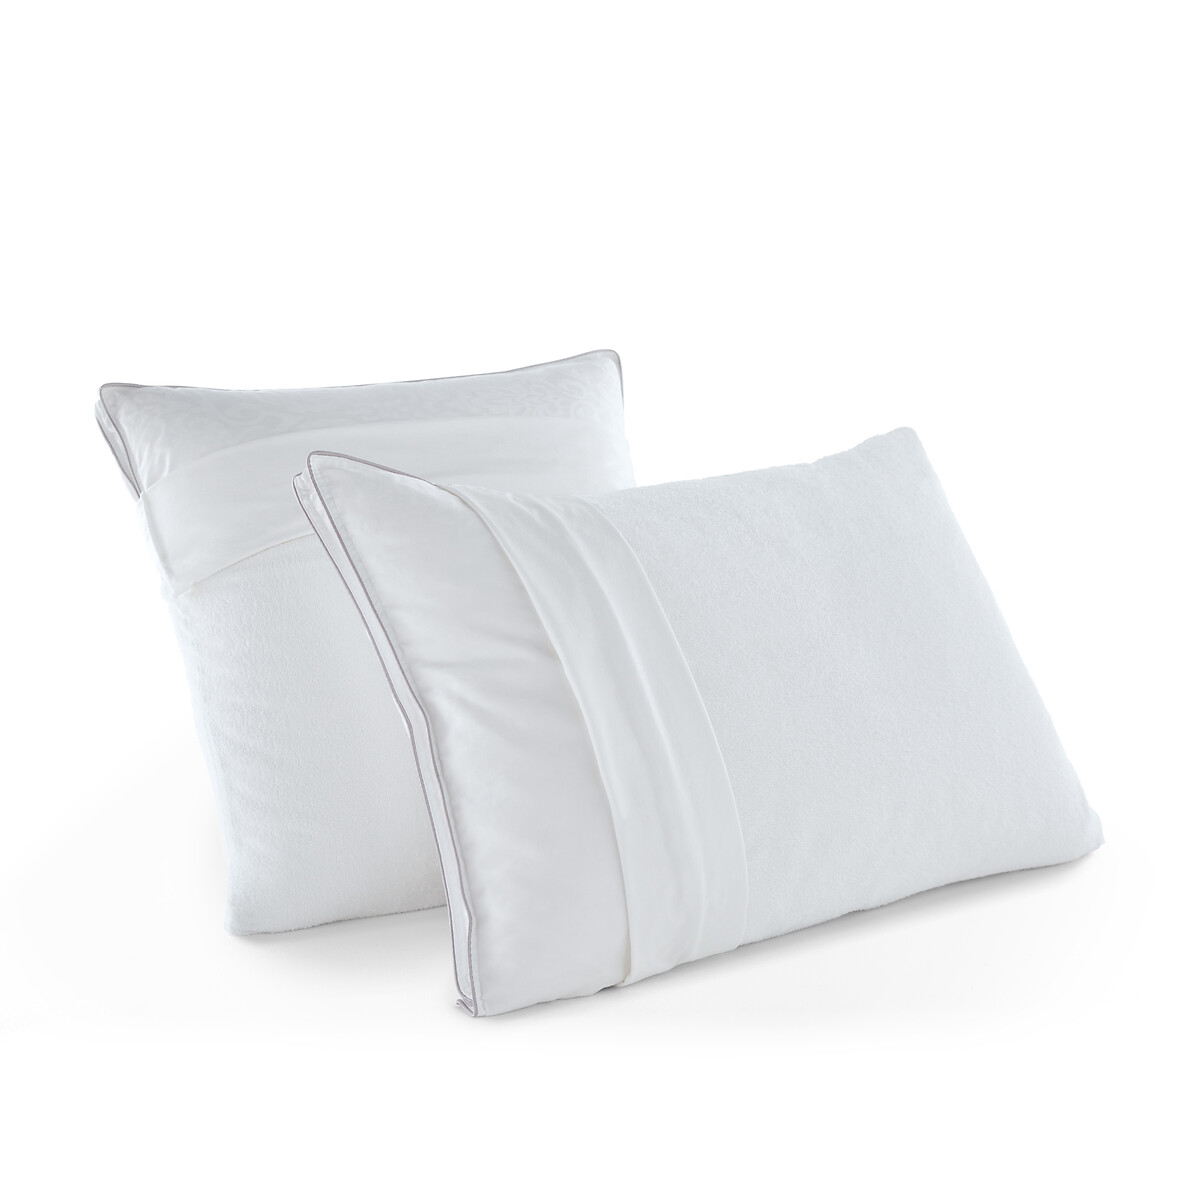 Чехол Нижний на подушку из махровой непромокаемой ткани 60 x 60 см белый